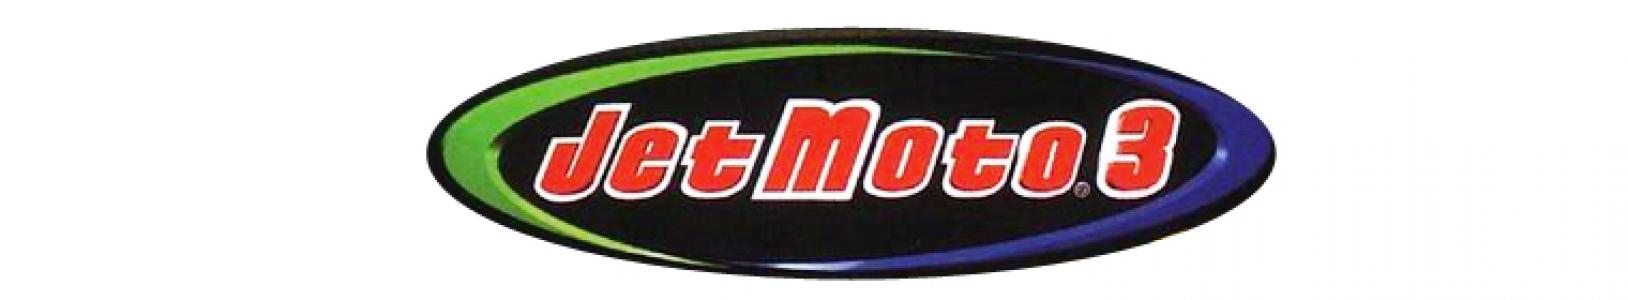 Jet Moto 3 banner